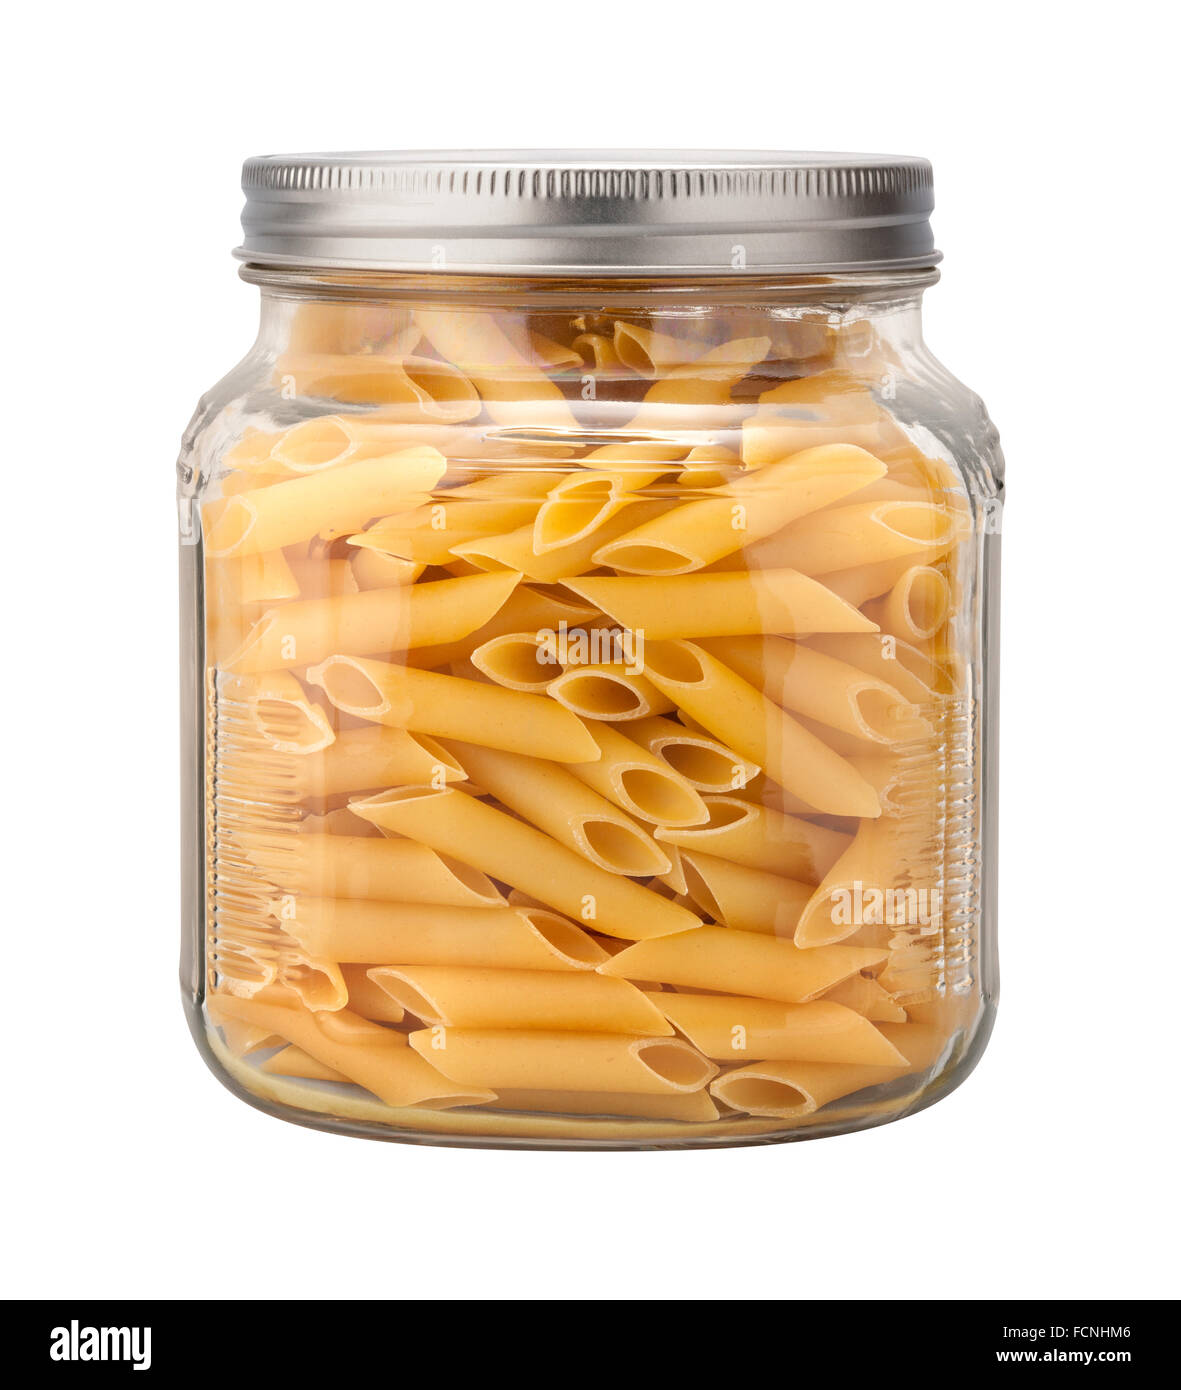 Mostaccioli Pasta in a Glass Jar Stock Photo